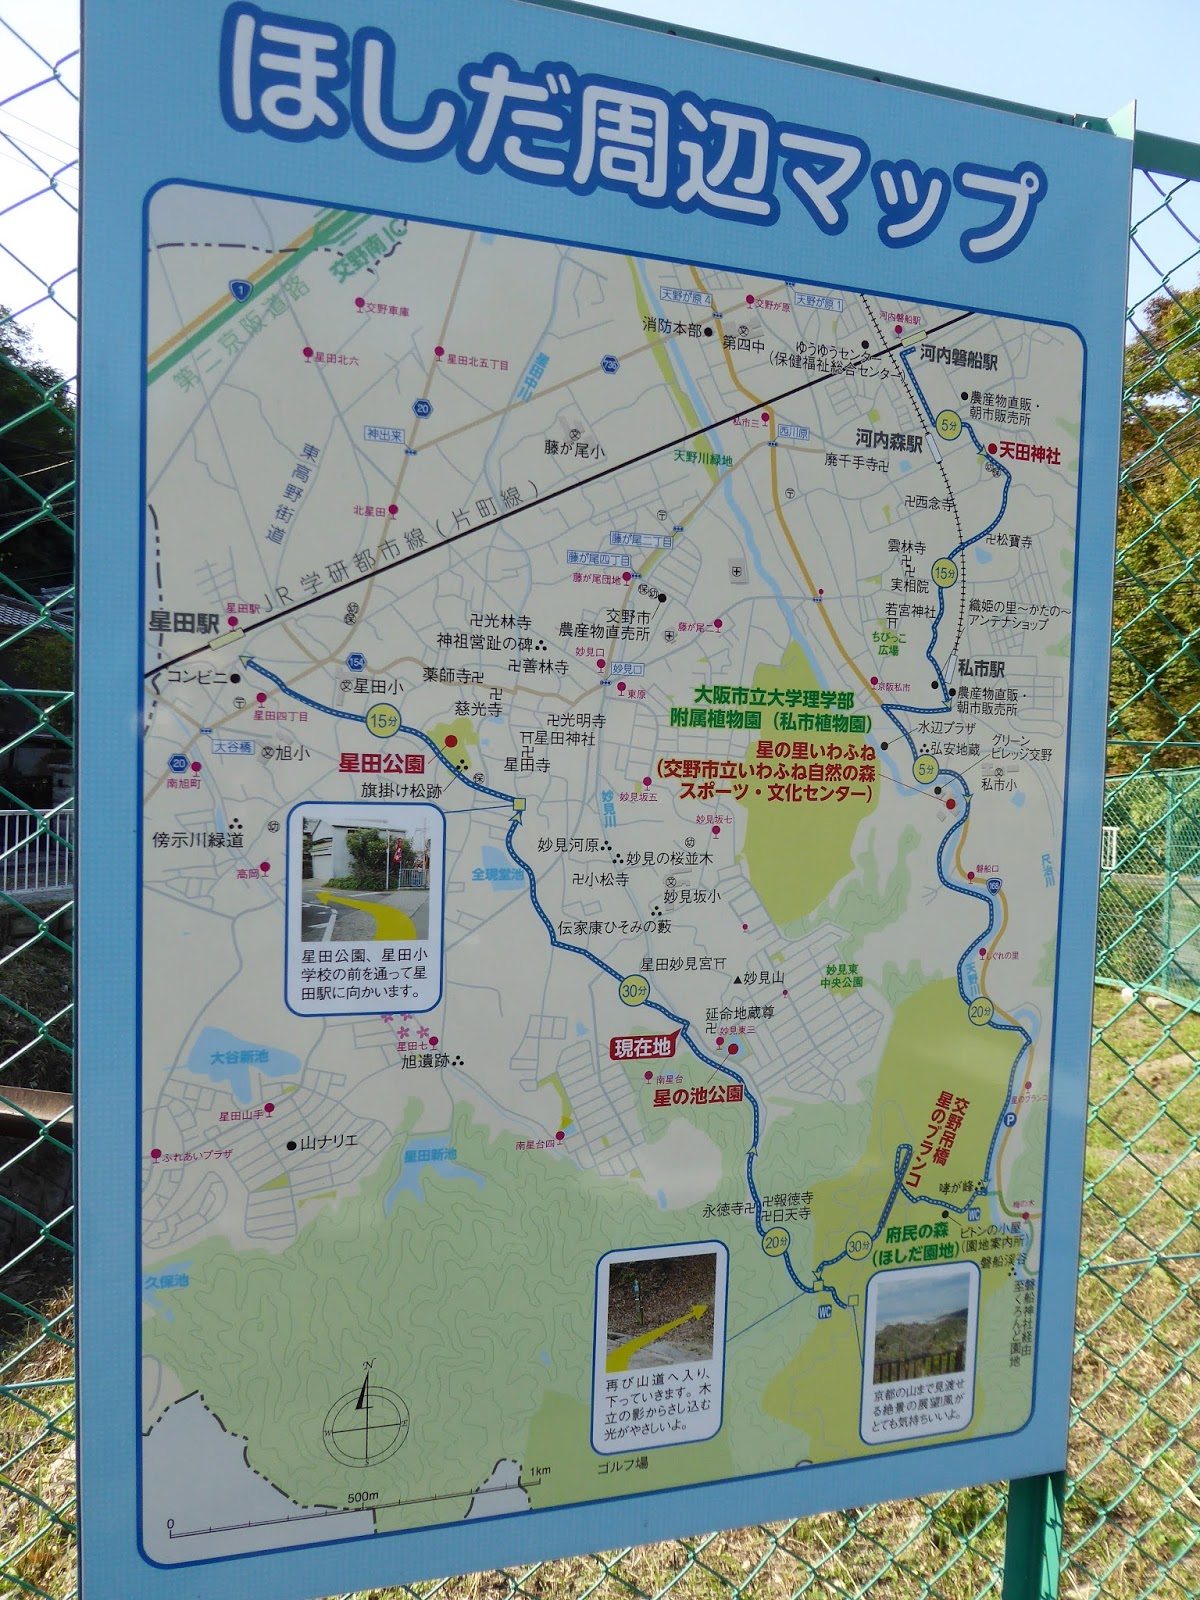 大阪府交野市 星のブランコ ハイキング 関西のウォーキングスポット ブログ